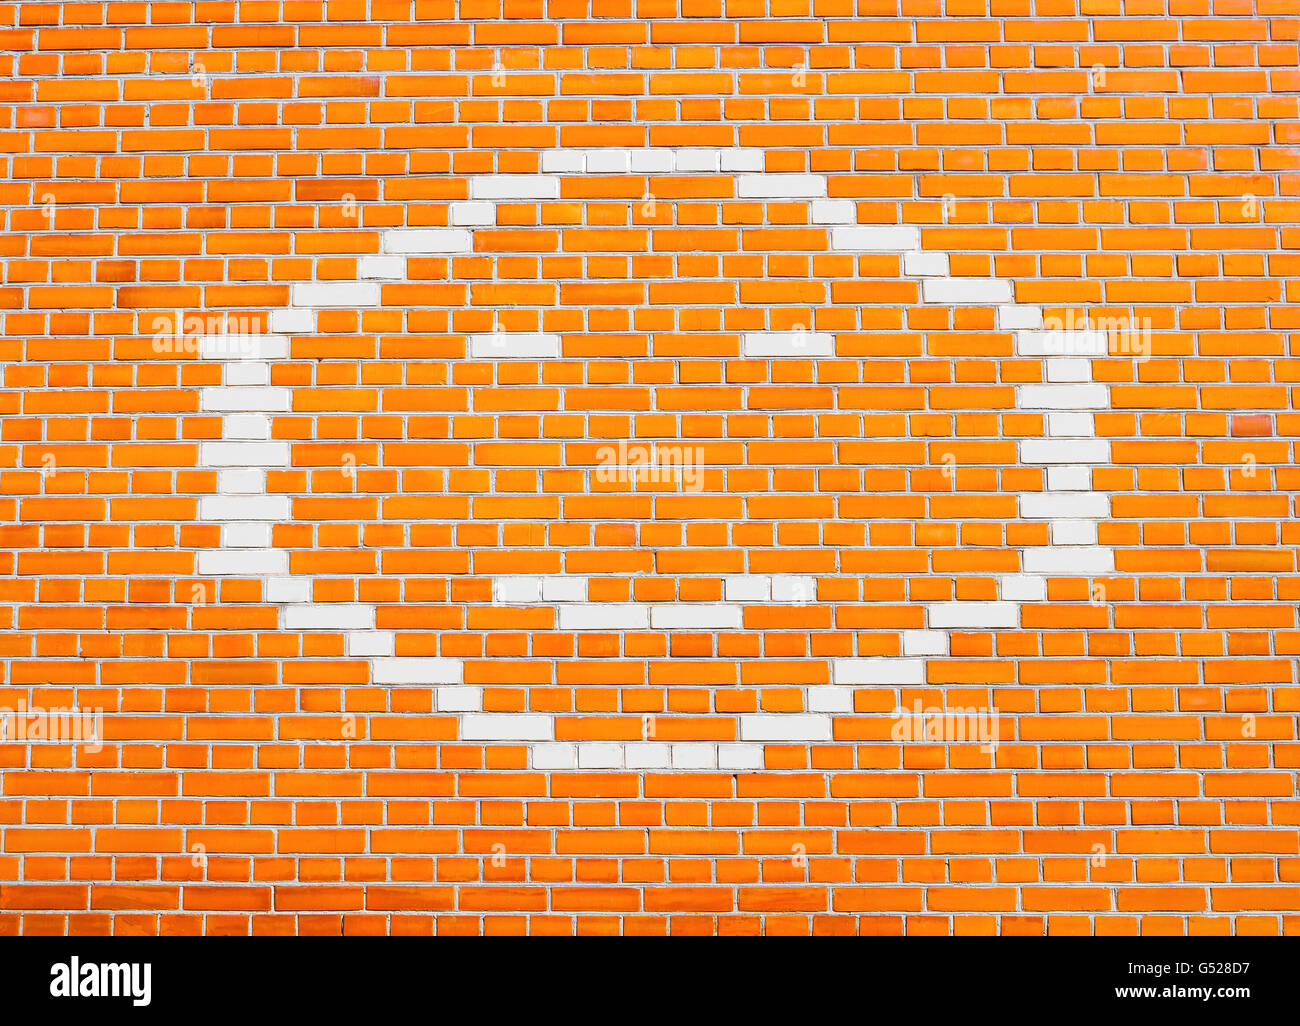 Faccina felice sulla faccia arancio brillante muro di mattoni Foto Stock